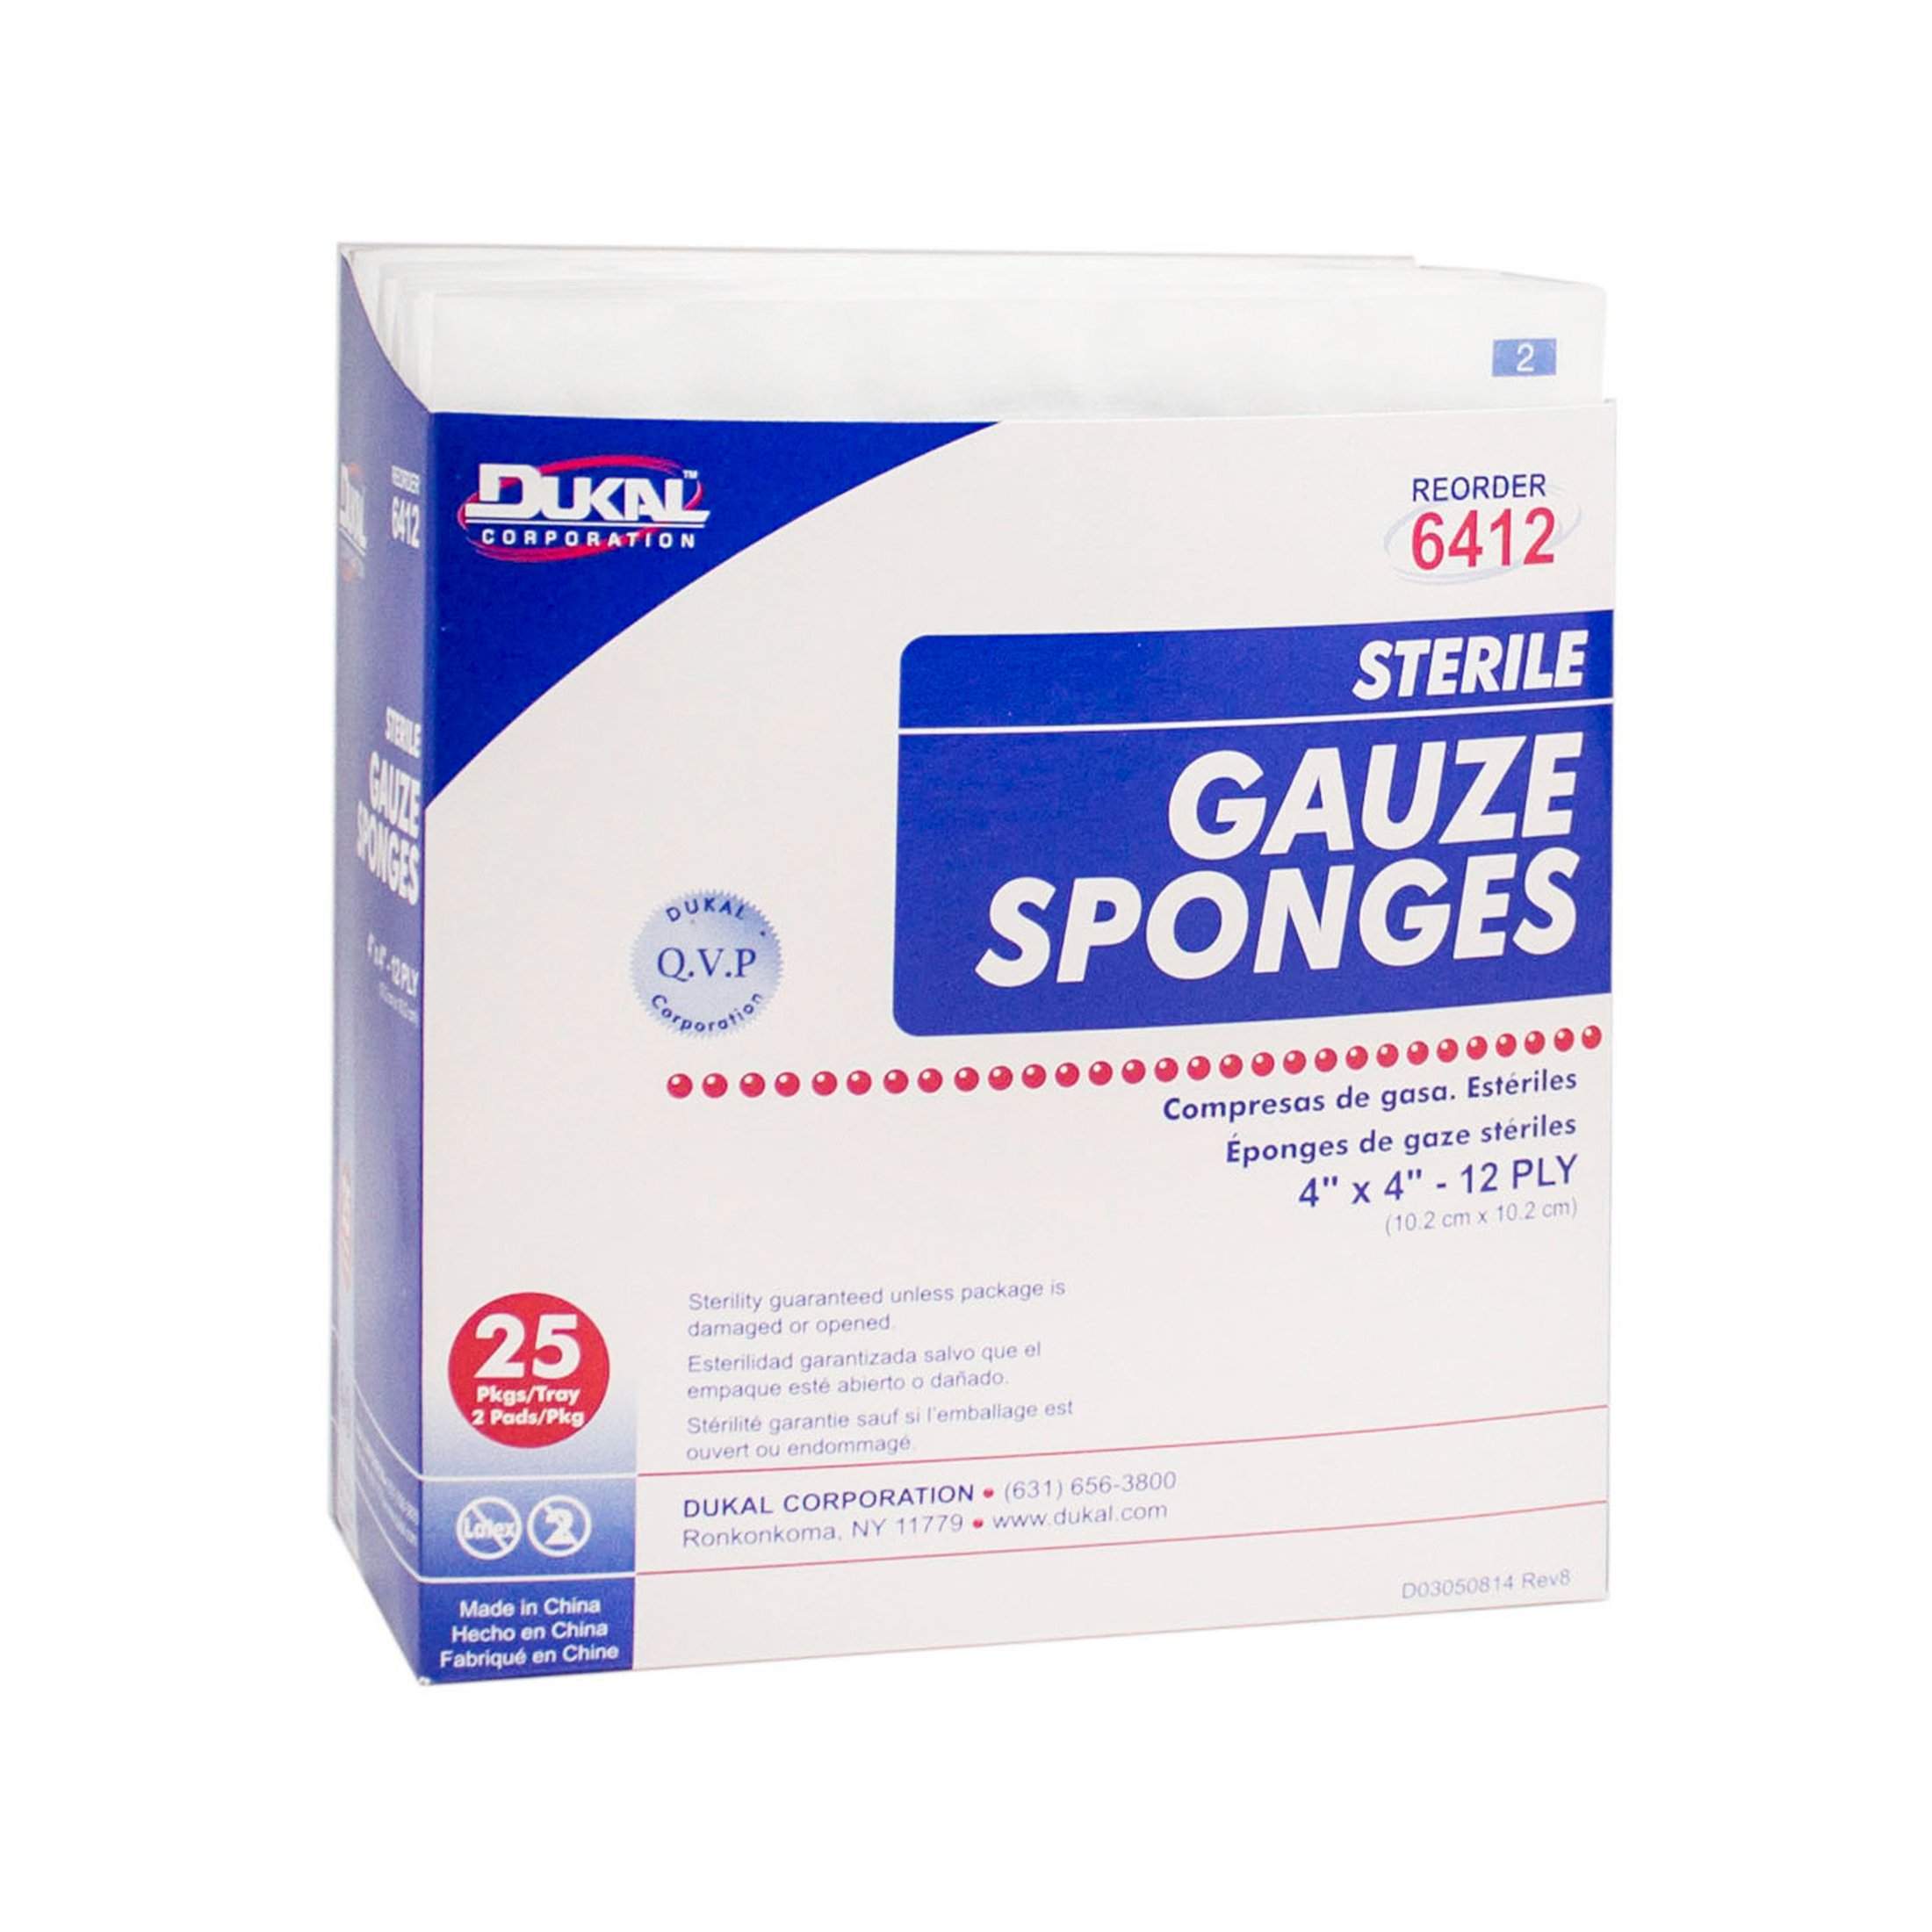 Dukal Gauze Sponge - Sterile, 4